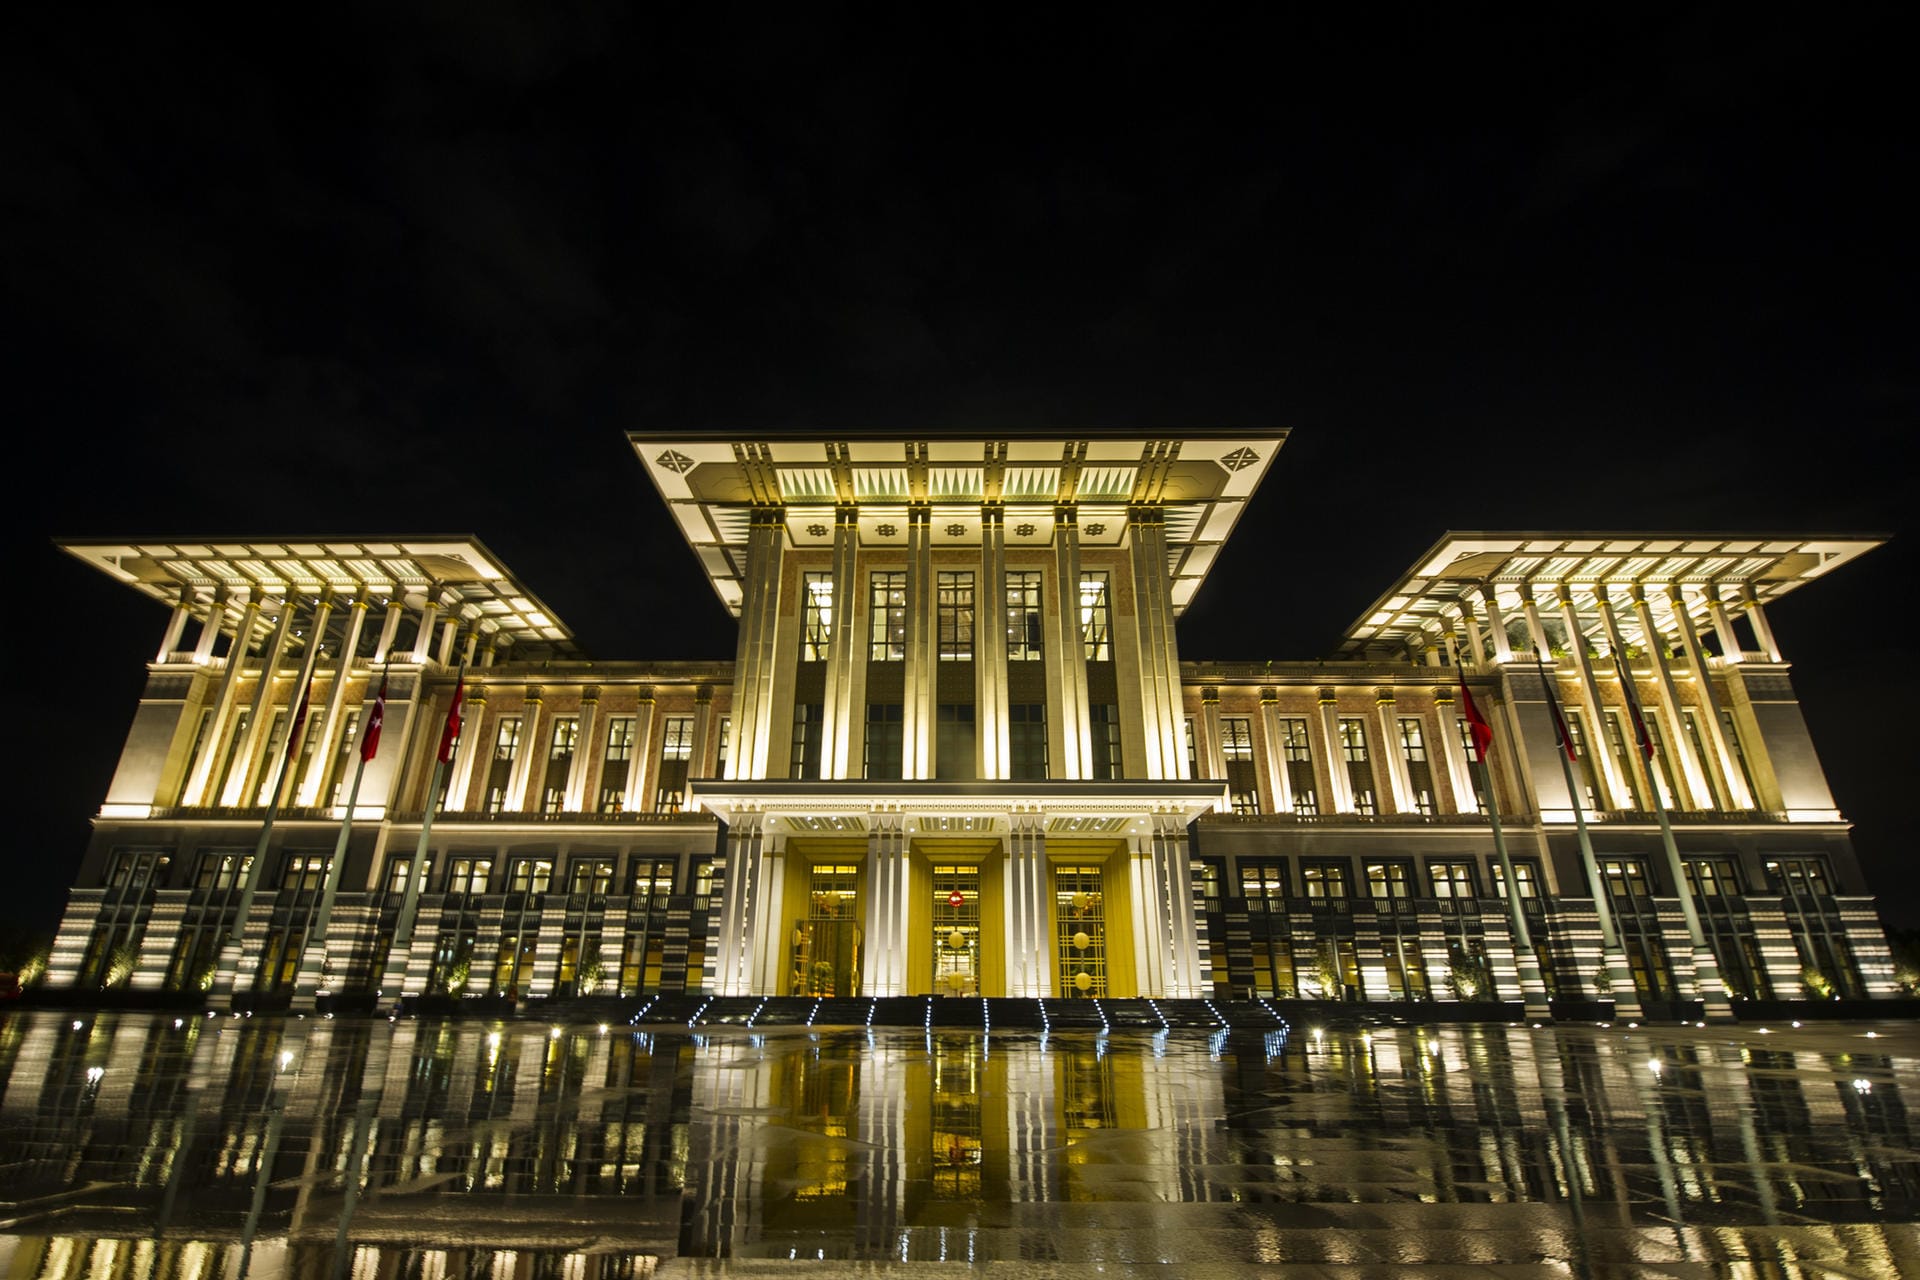 Als Präsident baute er seine Macht zunehmend aus. In Ankara baute er sich außerdem einen Palast als Regierungssitz. Sein nächstes Ziel: die Einführung eines Präsidialsystem.